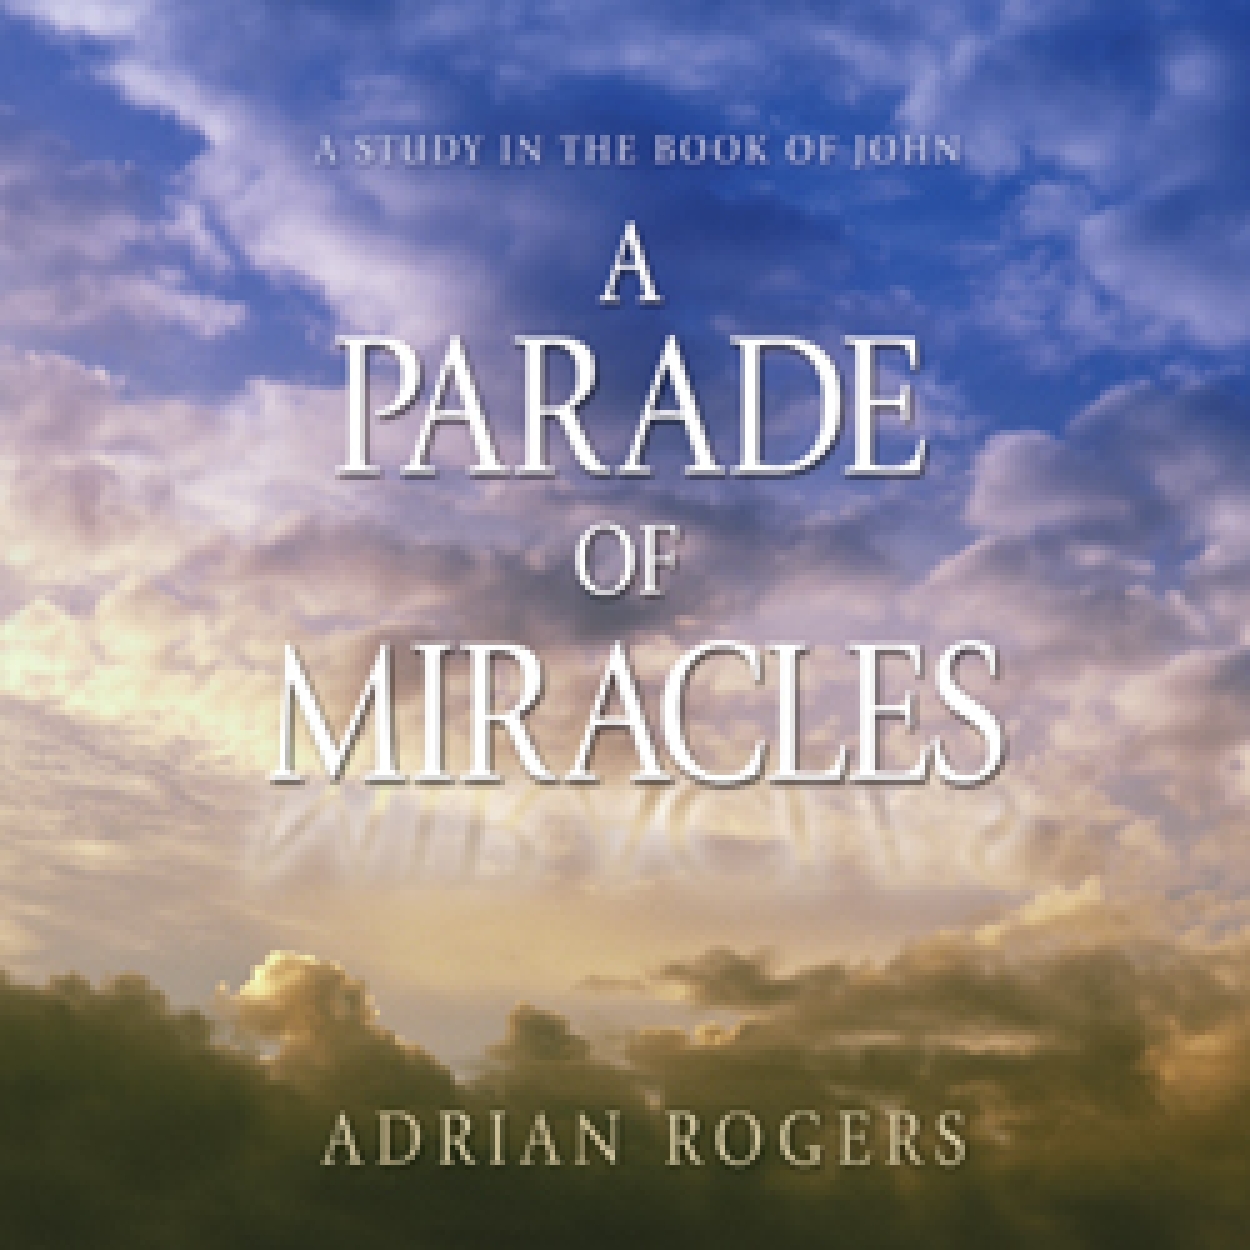 Cda121Lg A Parade of Miracles Series